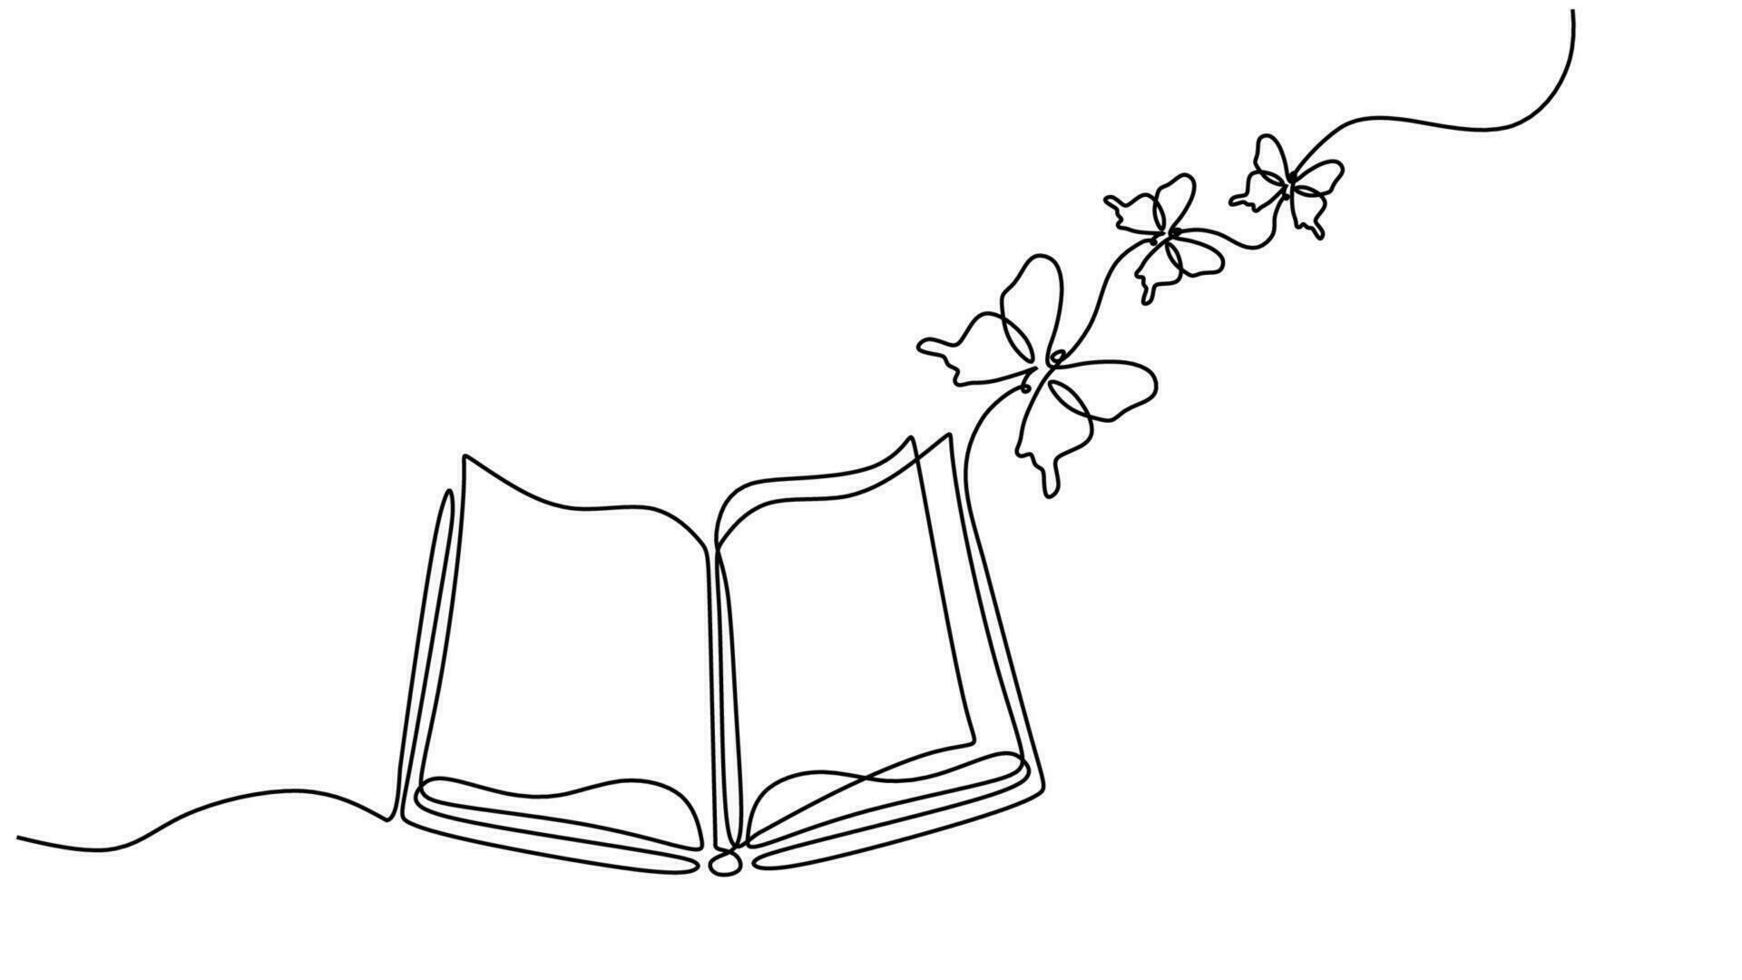 vôo livro 1 linha desenhando com borboleta. contínuo mão desenhado vetor